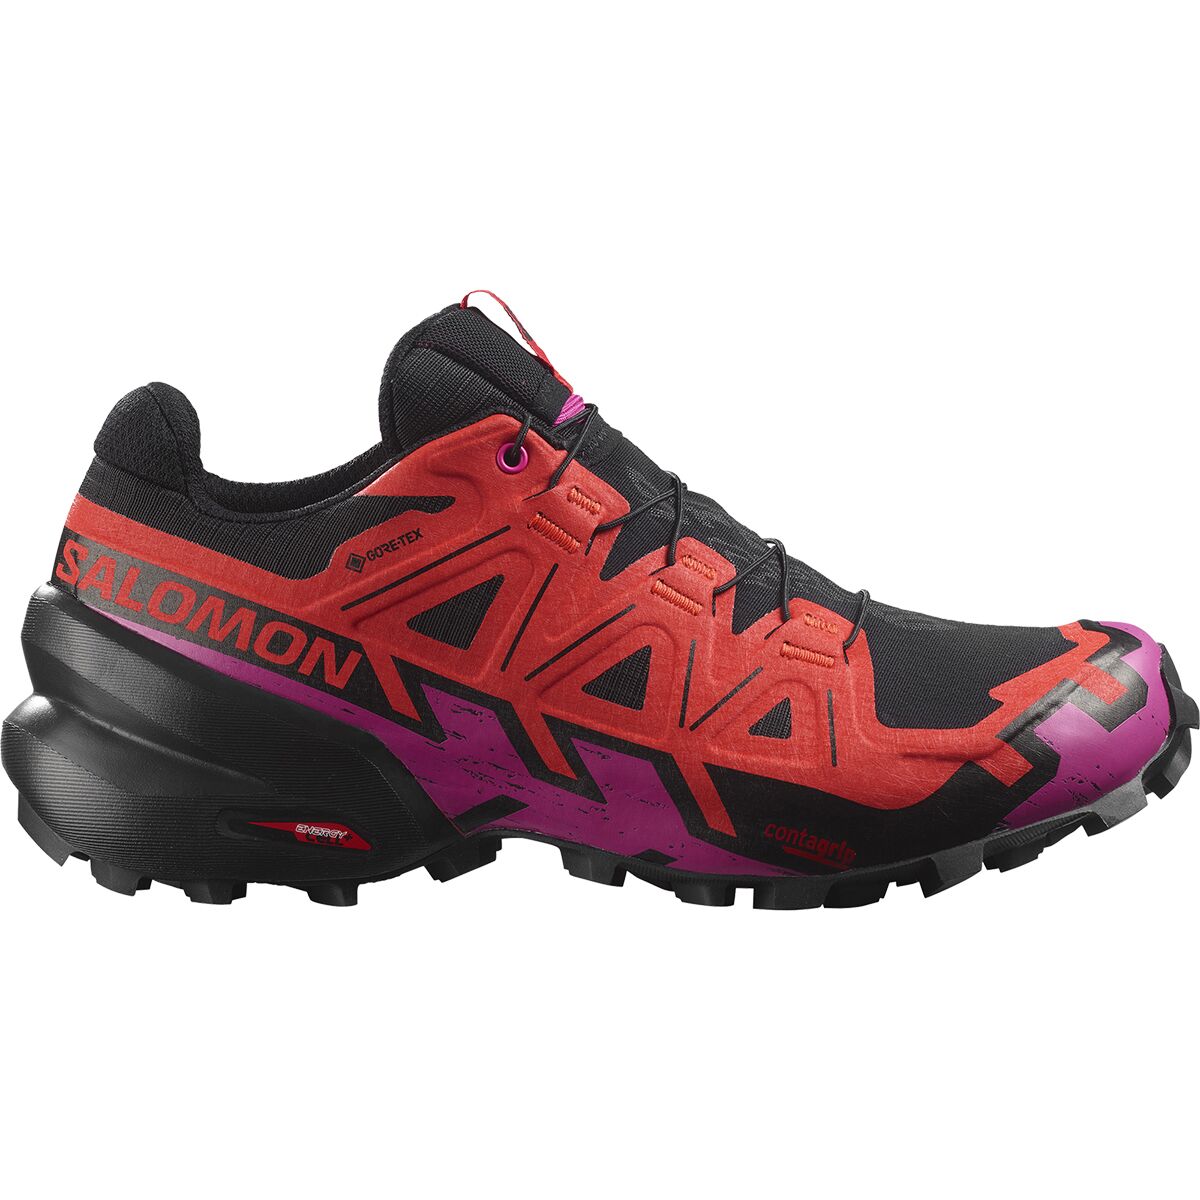 Speedcross 6 GTX Trail Running Shoe - Women